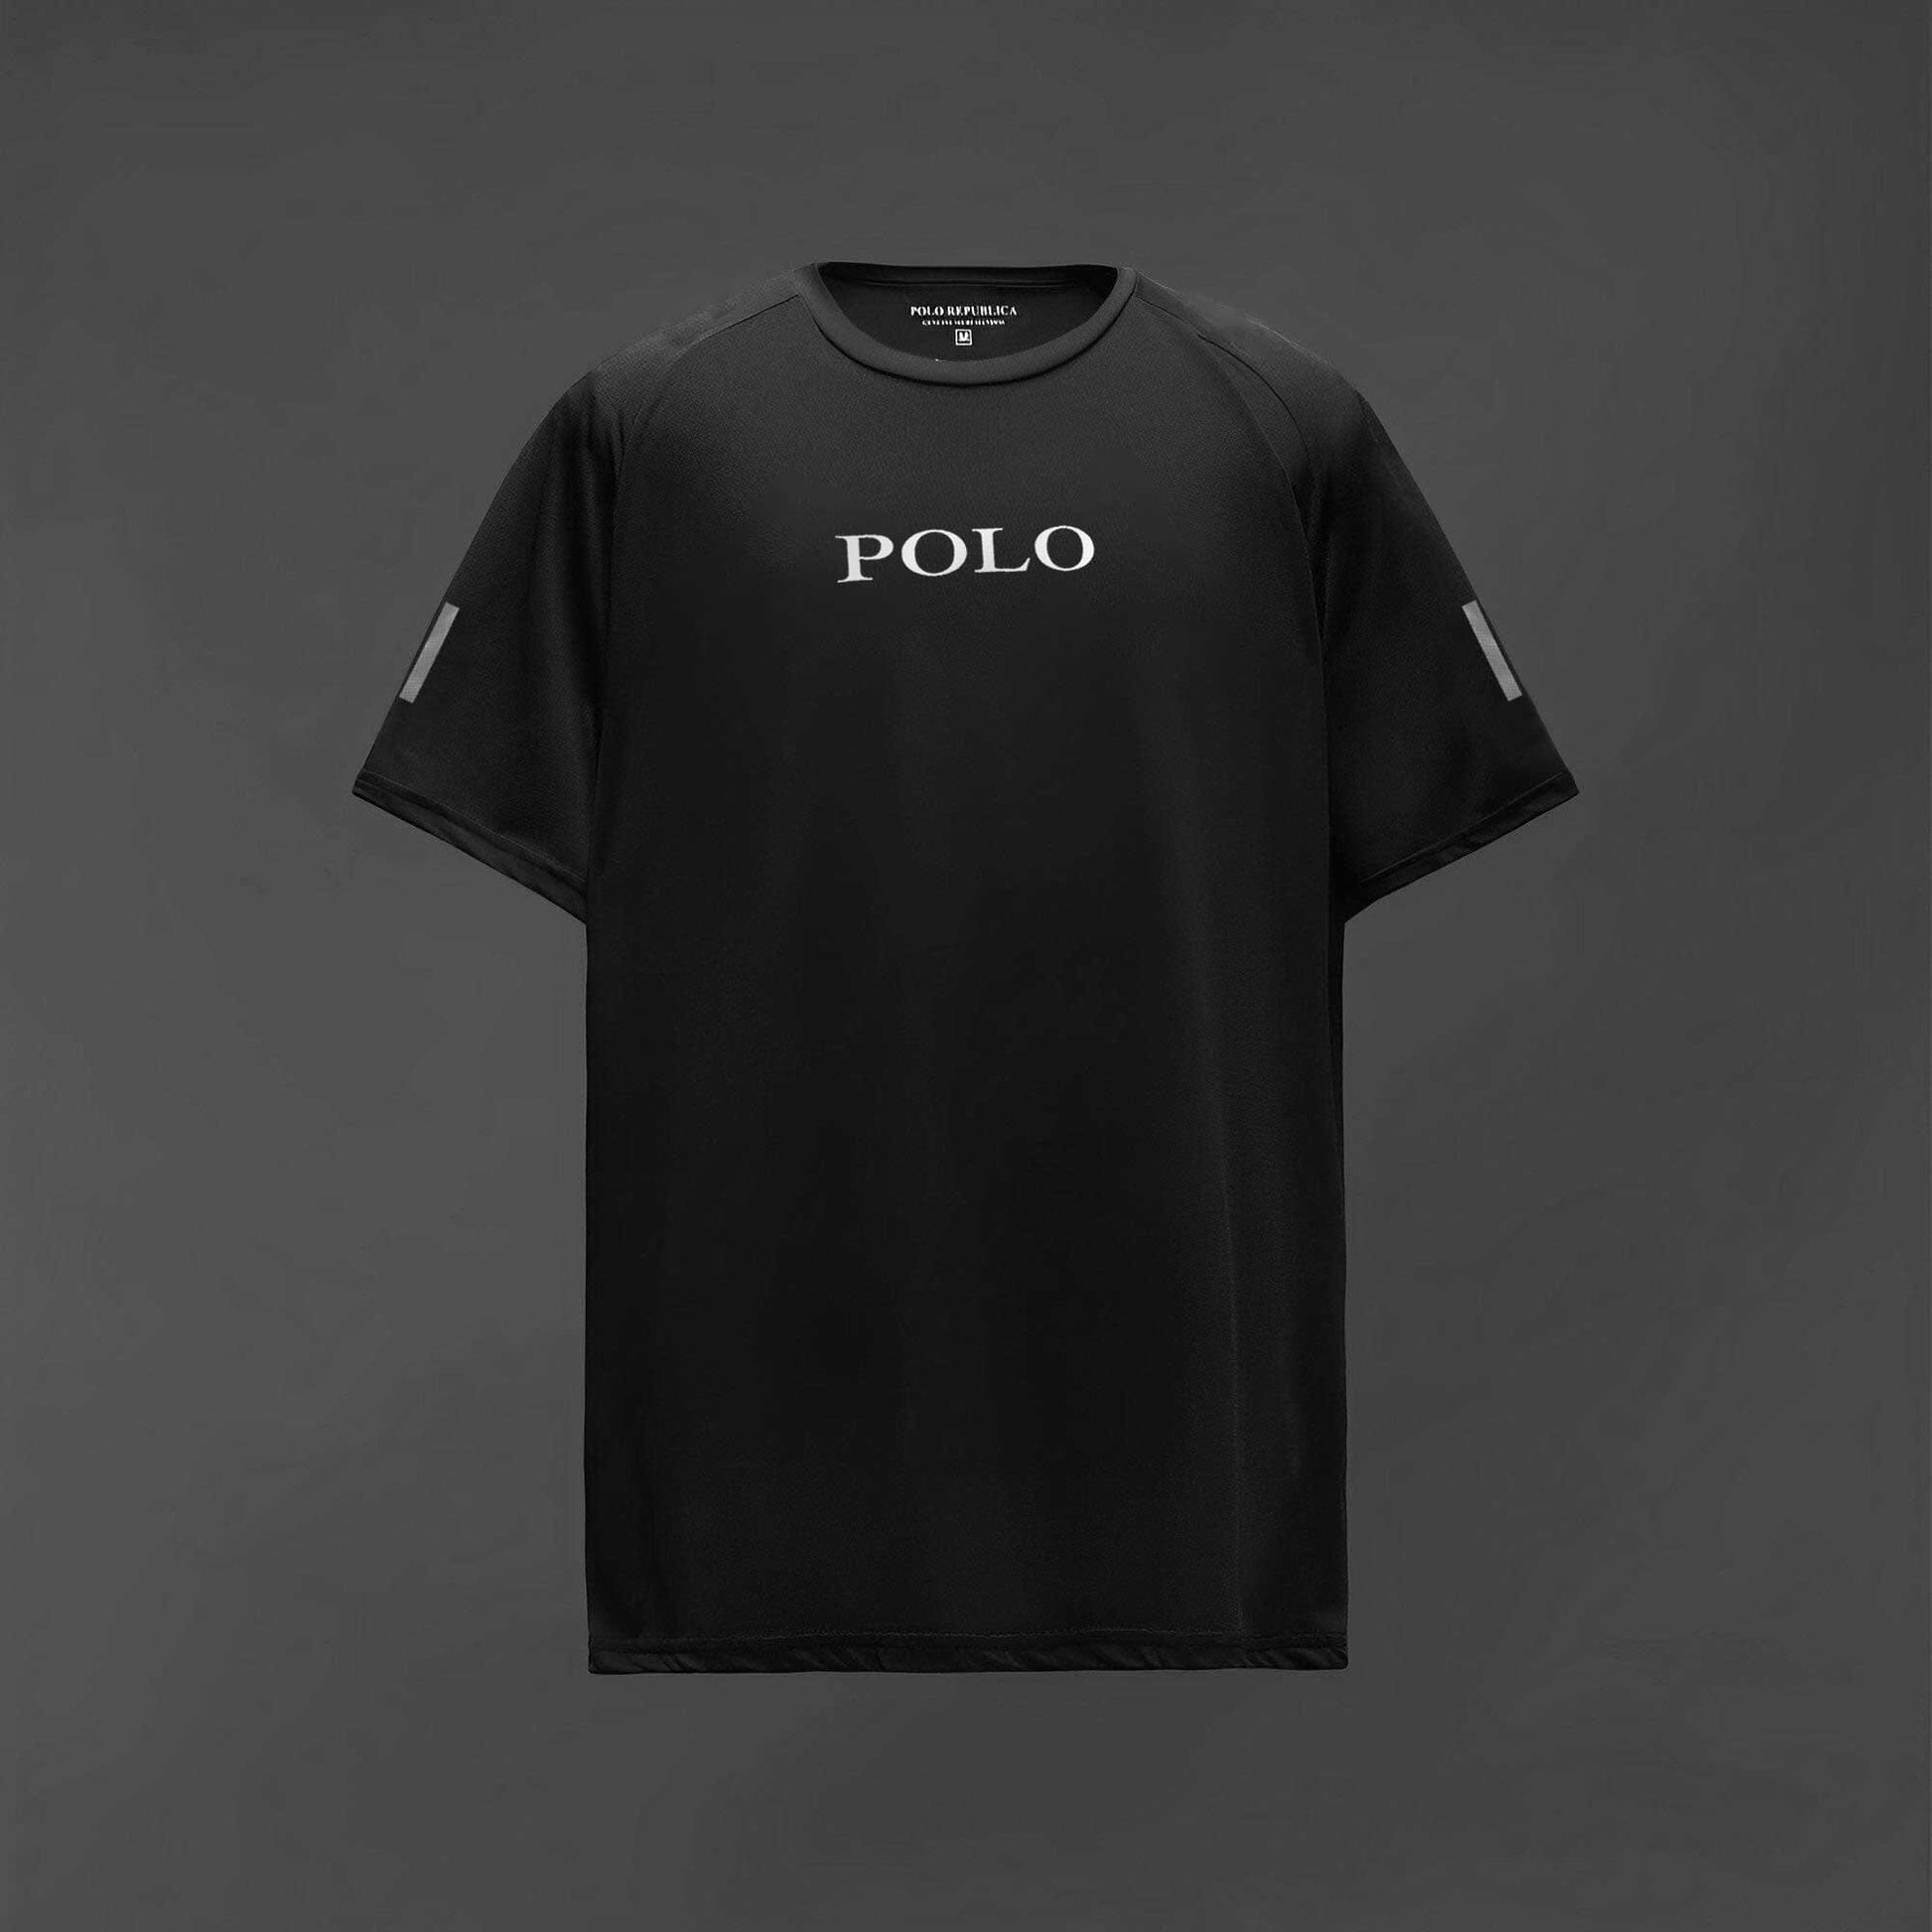 Polo Republica Men's Polo Athletic & Single Stripes Printed Raglan Activewear Tee Shirt Men's Tee Shirt Polo Republica 